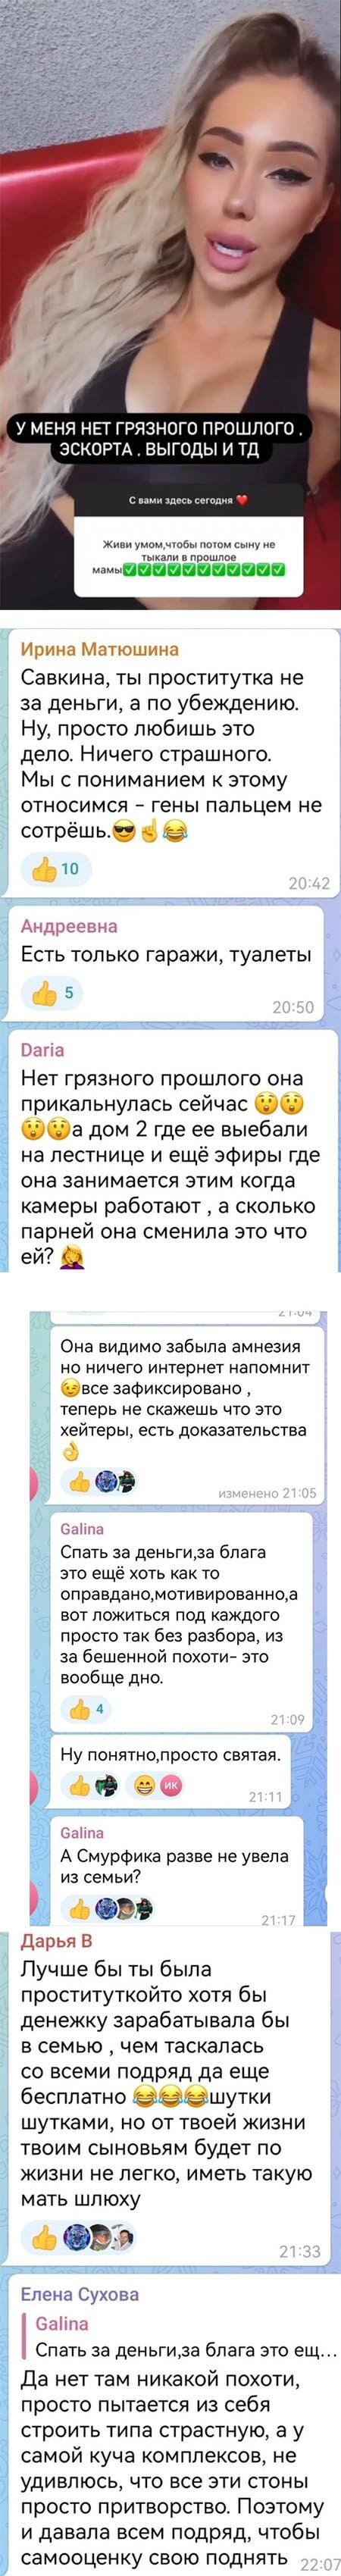 Пост Алены Савкиной вконтакте